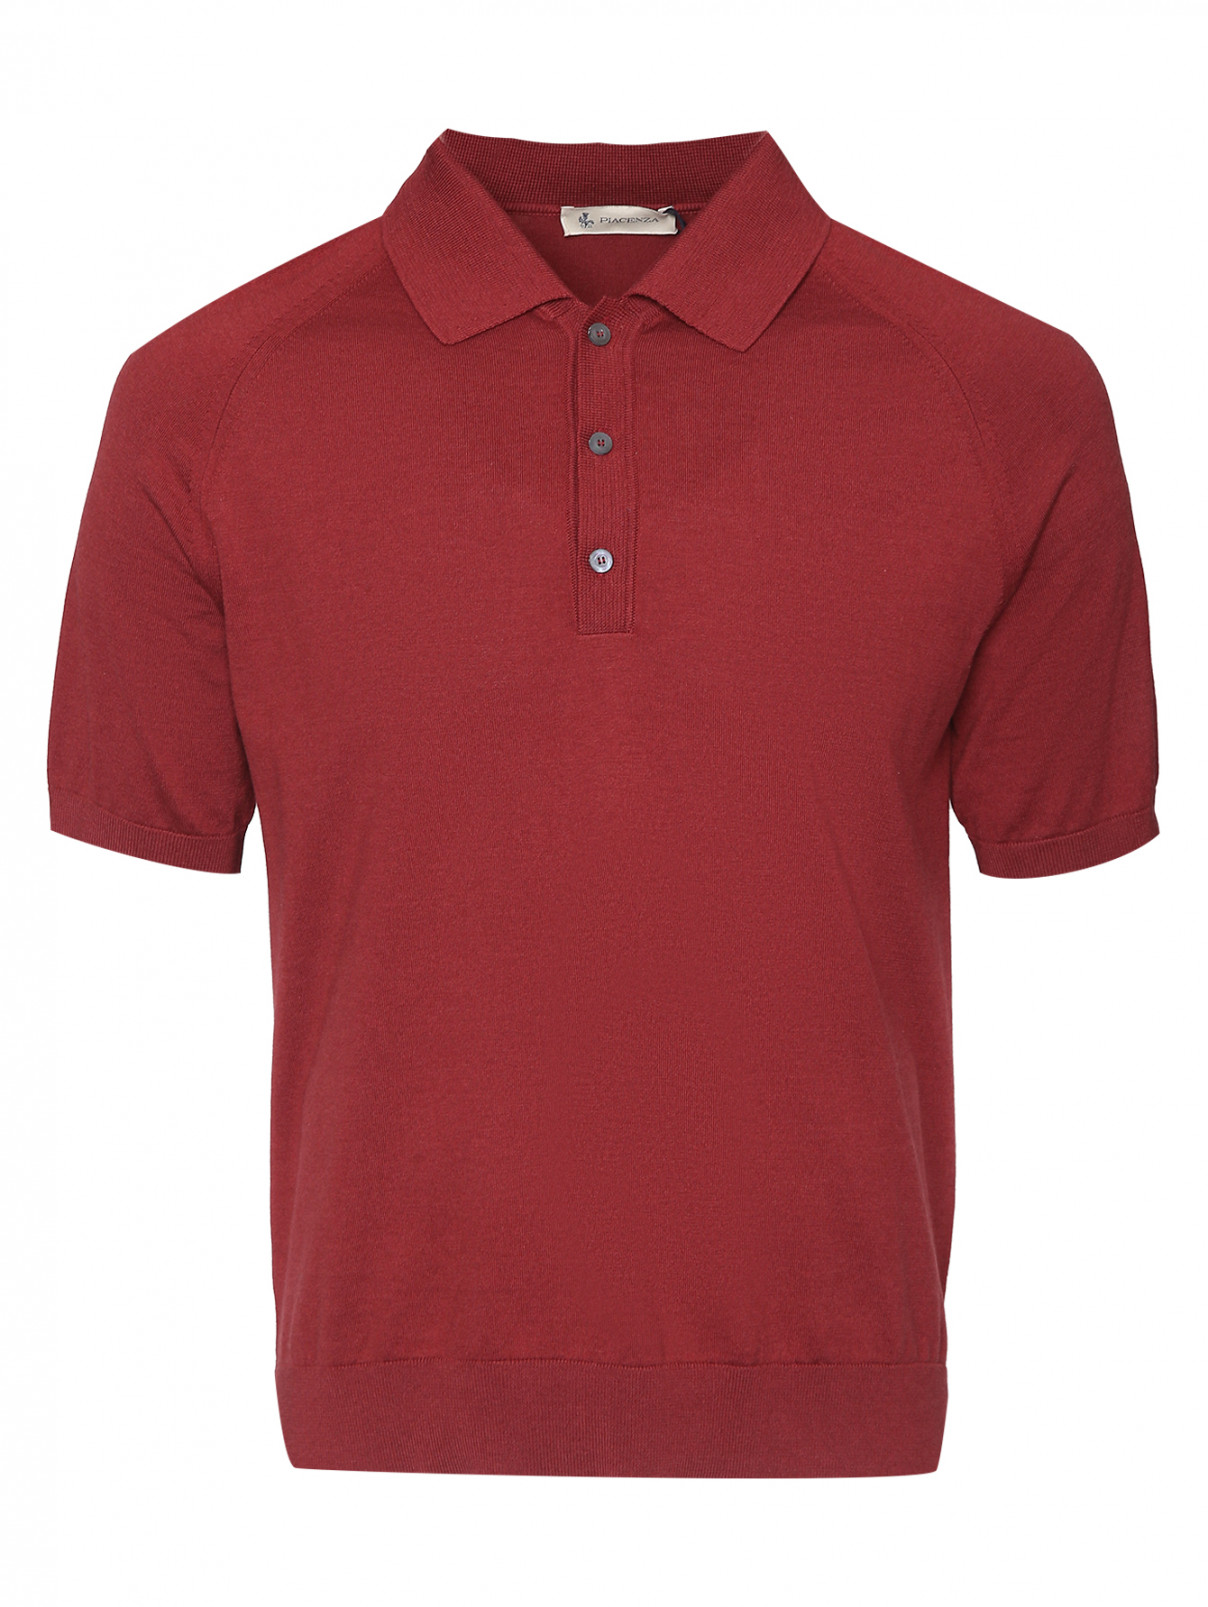 Поло из шелка и хлопка с короткими рукавами Piacenza Cashmere  –  Общий вид  – Цвет:  Красный